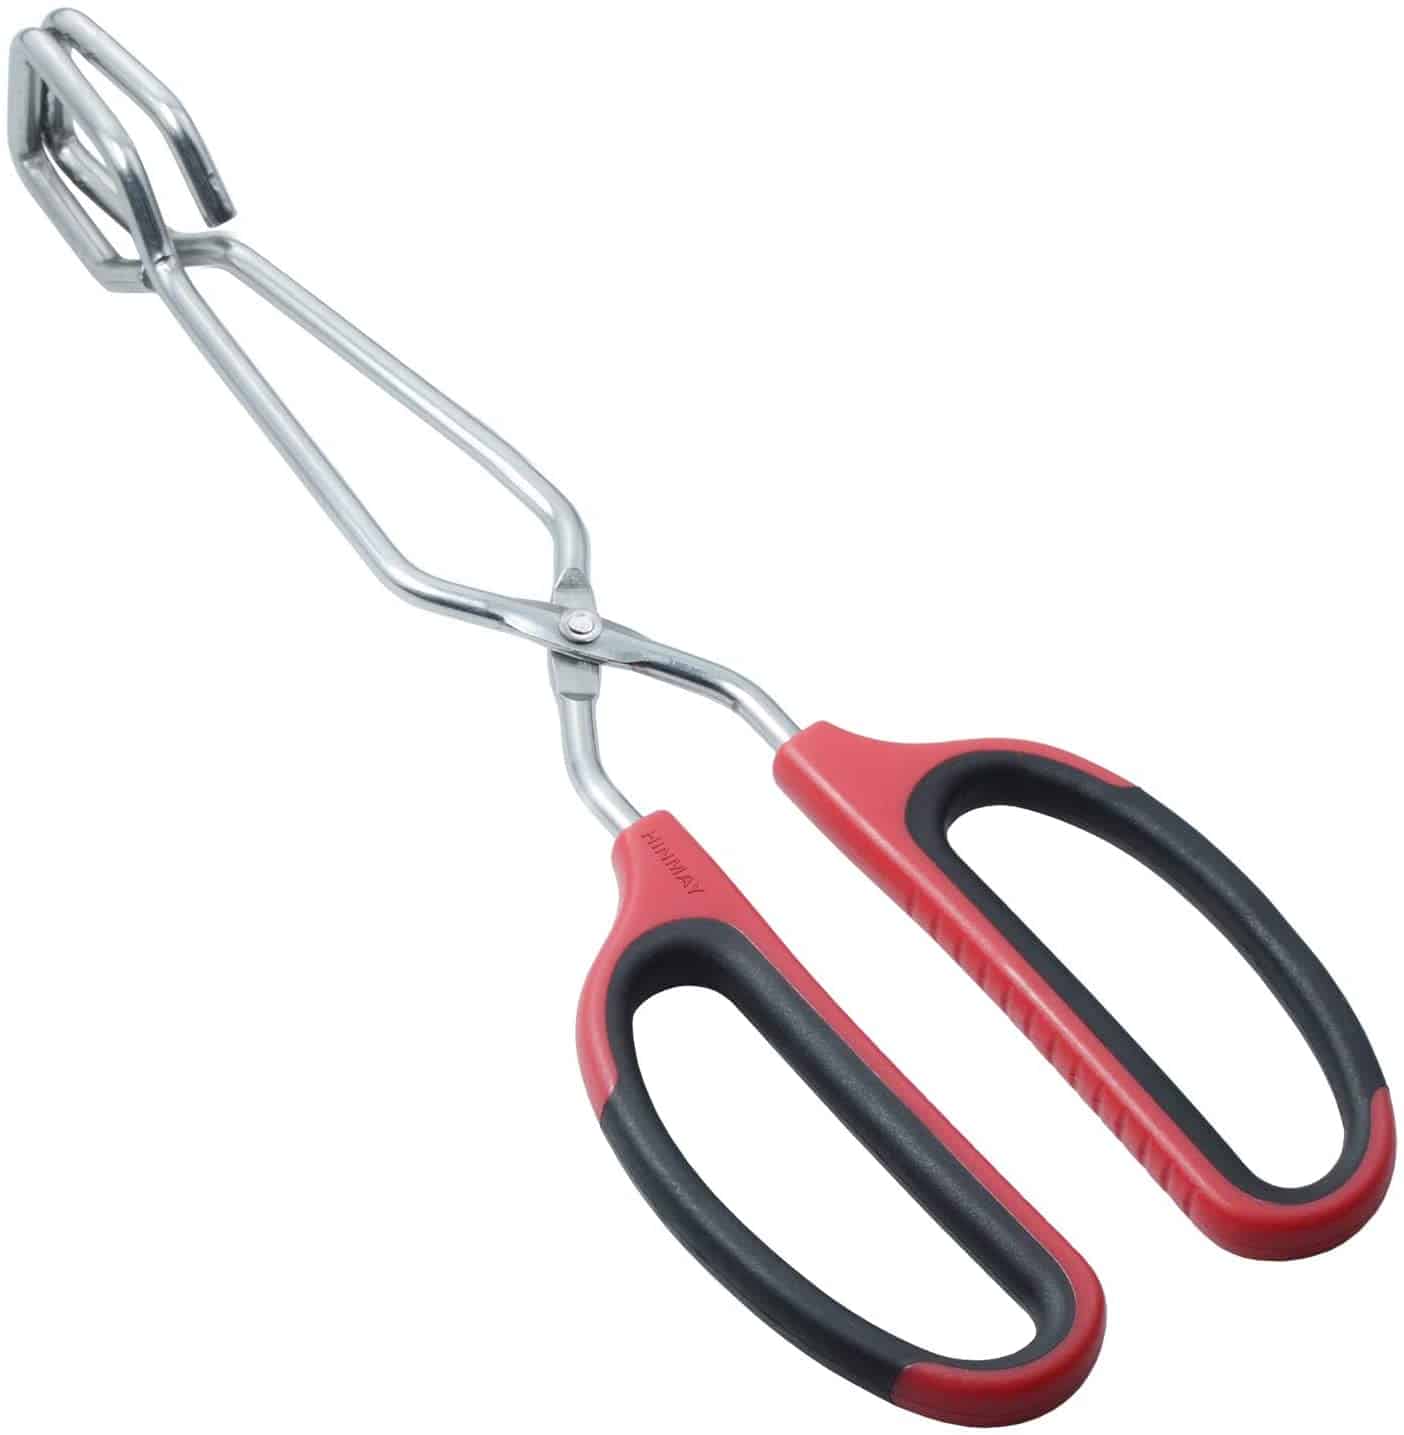 Best scissor tongs- HINMAY Stainless Steel Scissor Tongs